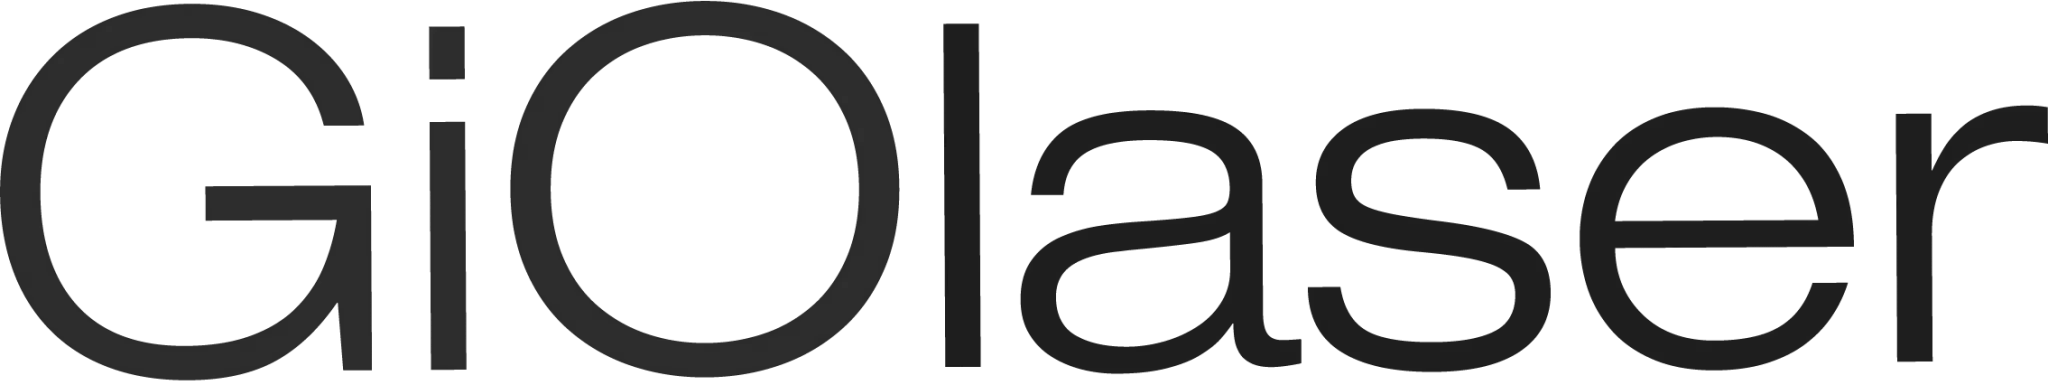 logo Giolaser